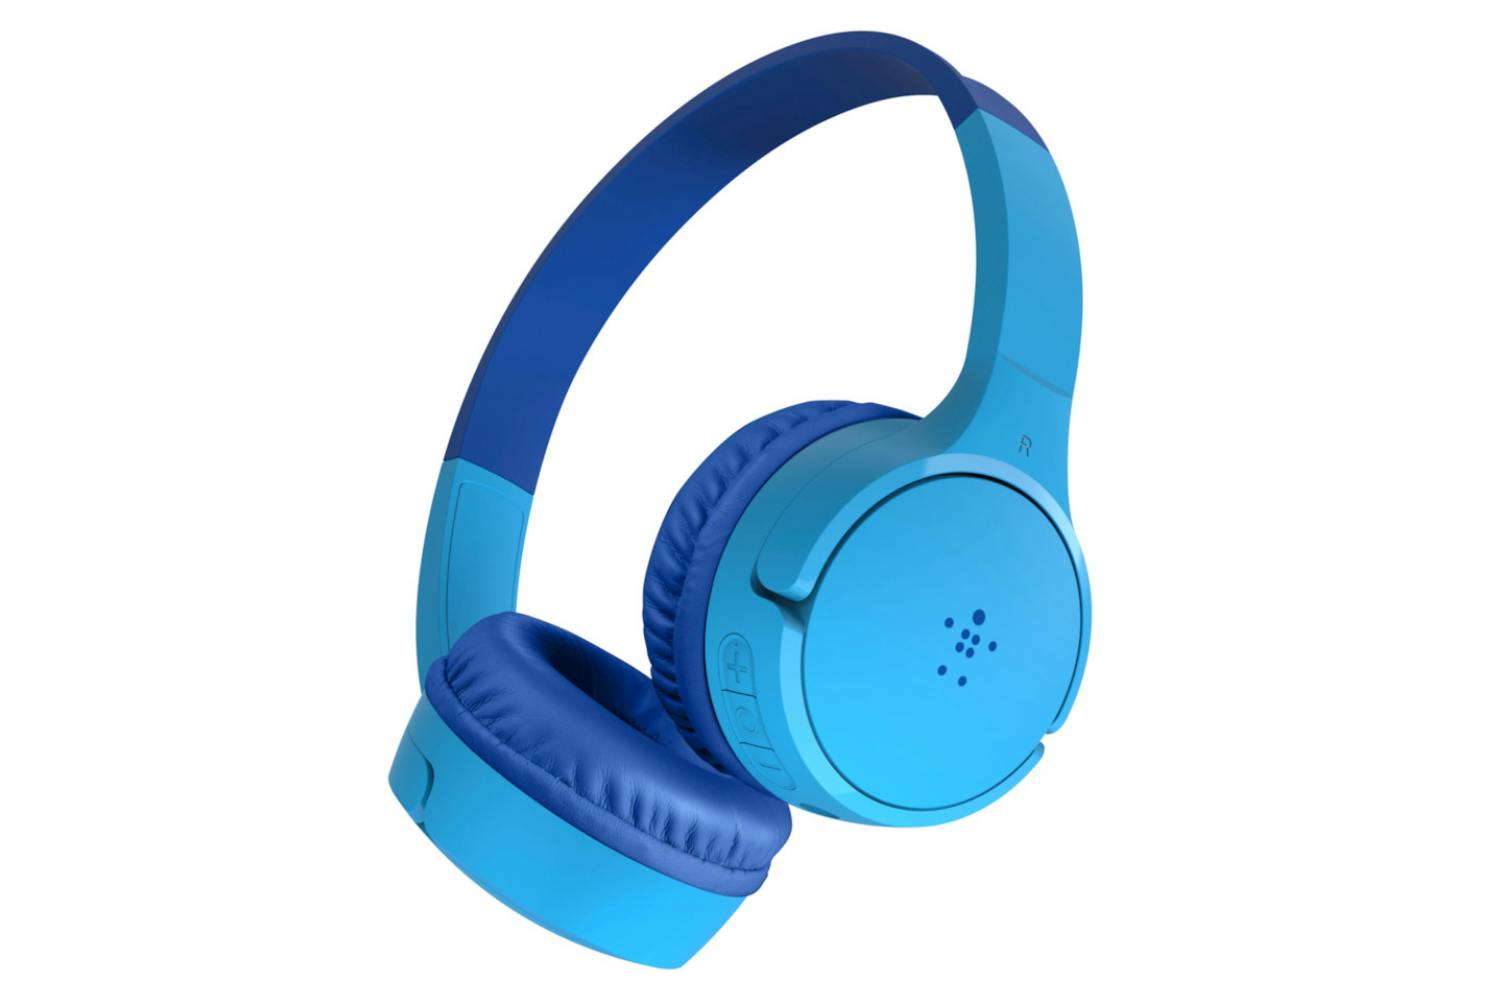 Belkin Soundform Mini On-Ear Wireless Kids Headphones, Blue